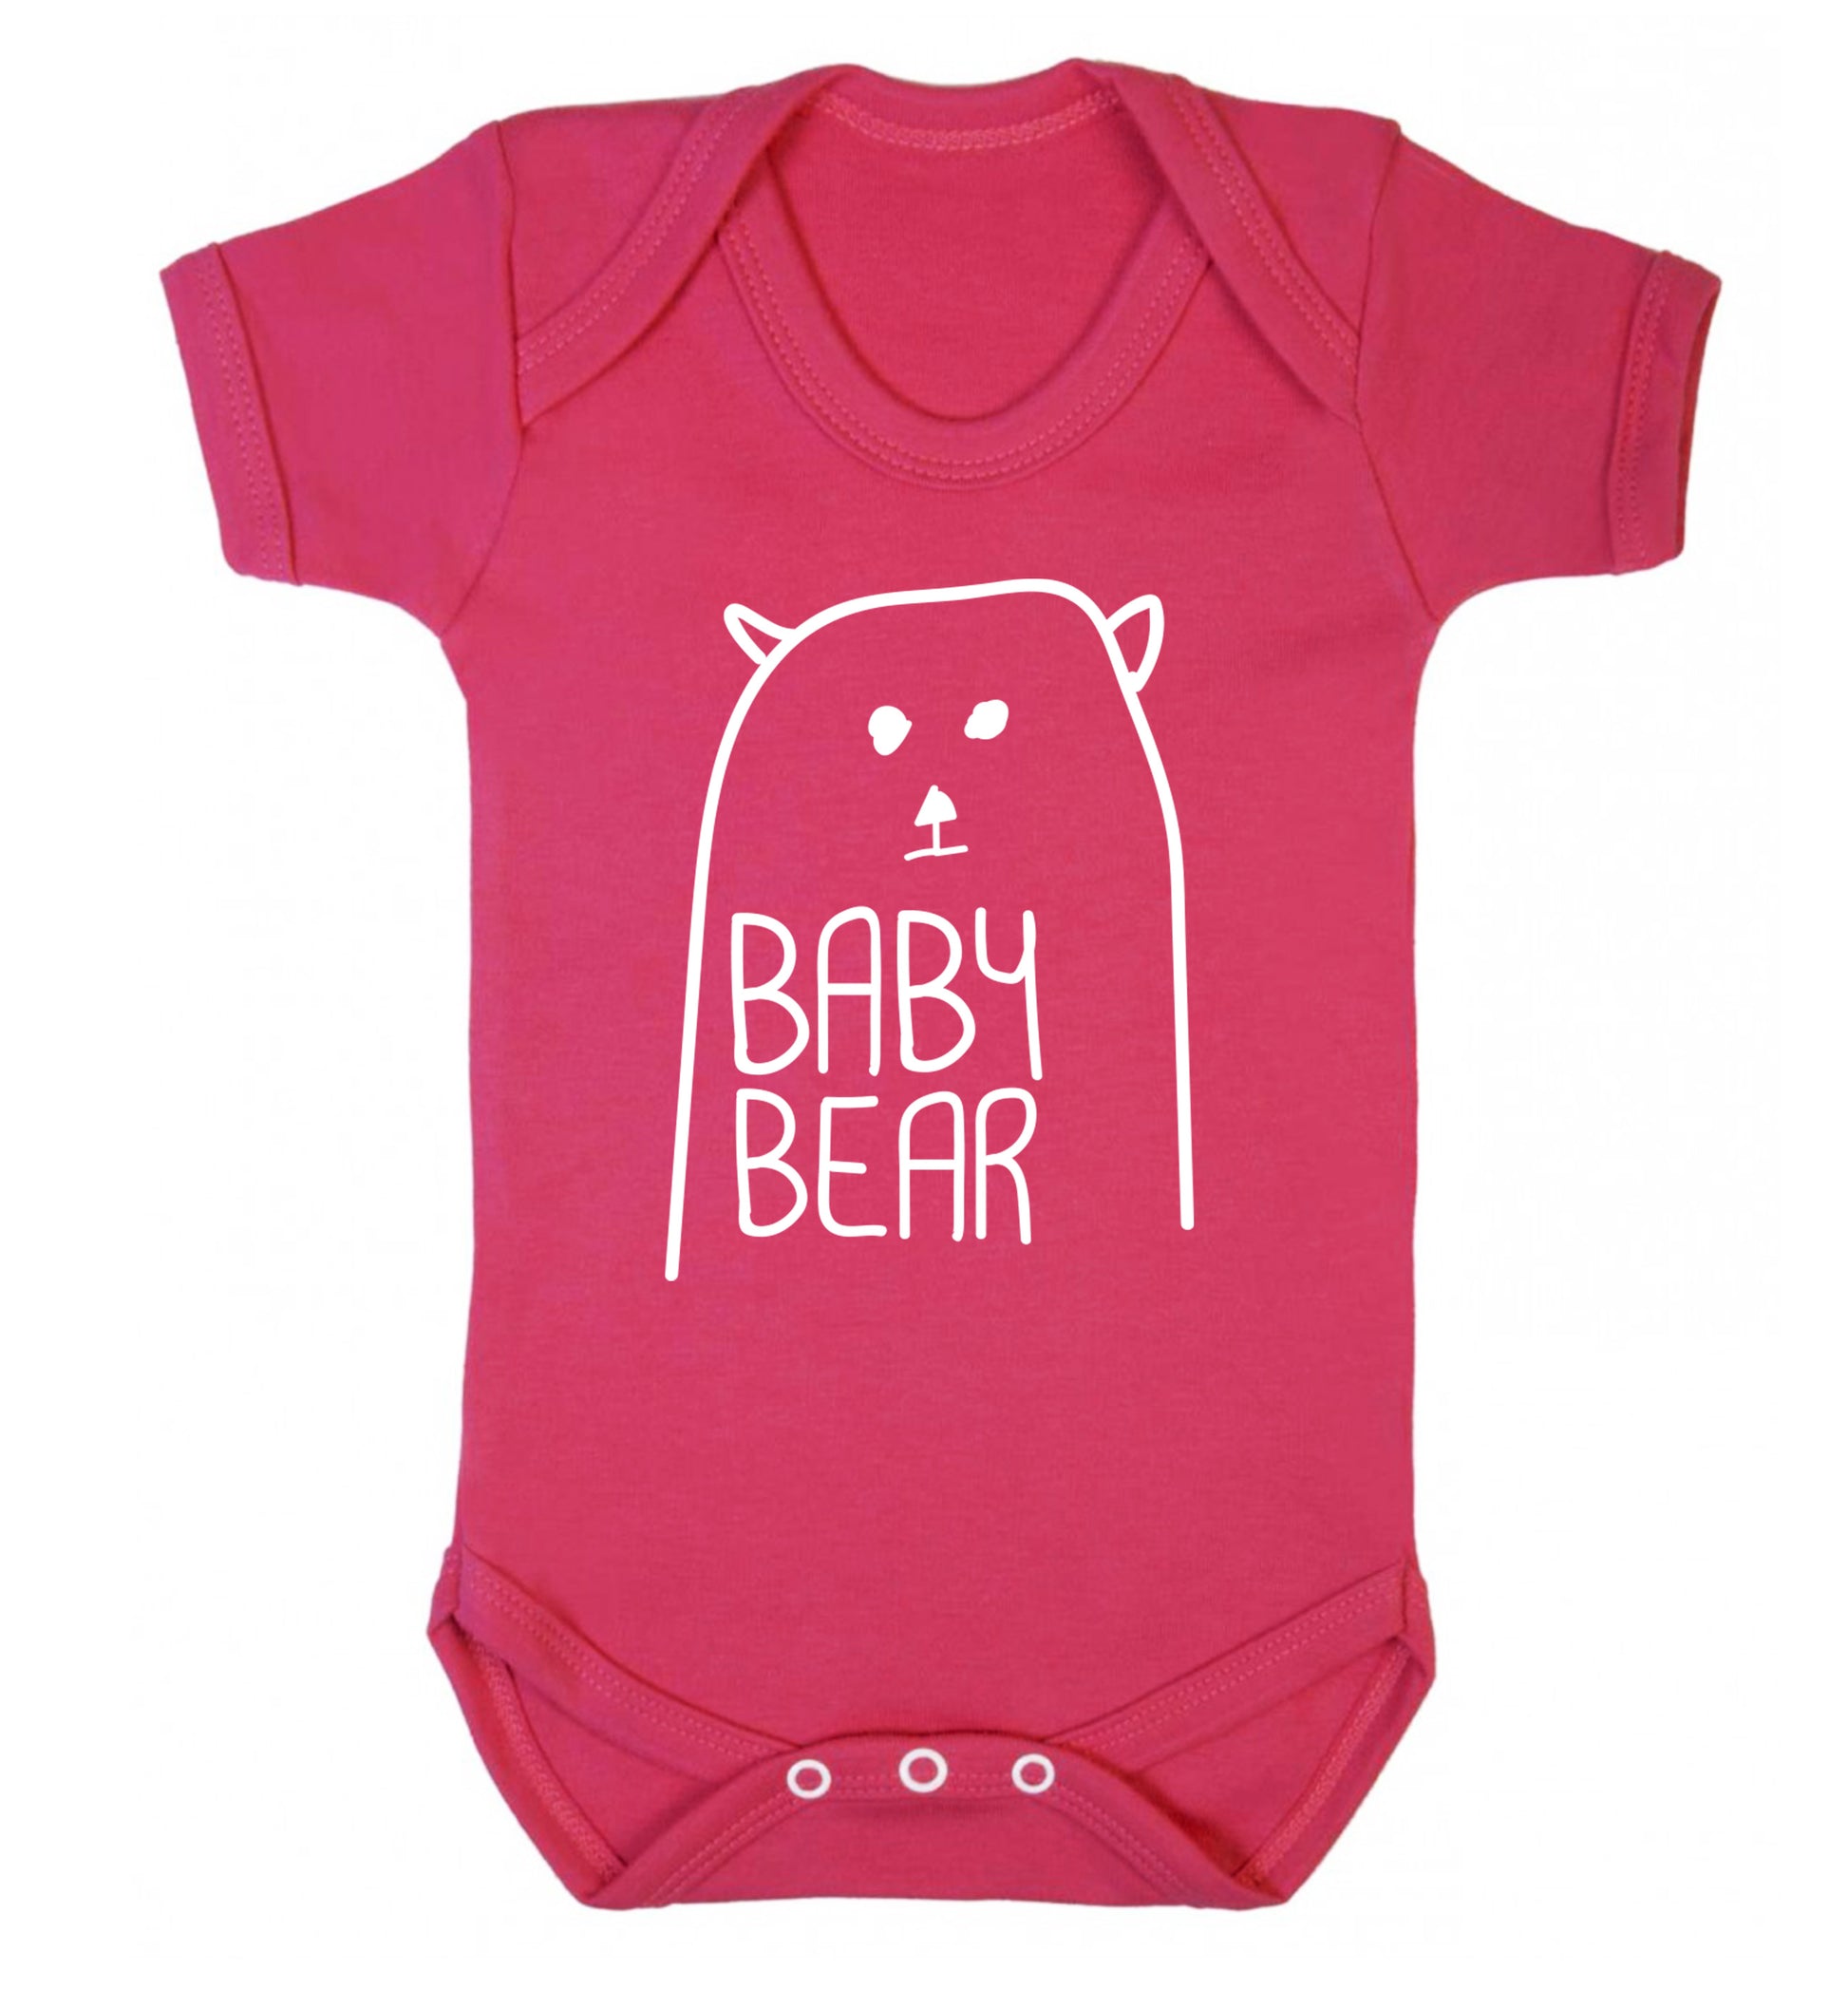 Baby bear Baby Vest dark pink 18-24 months